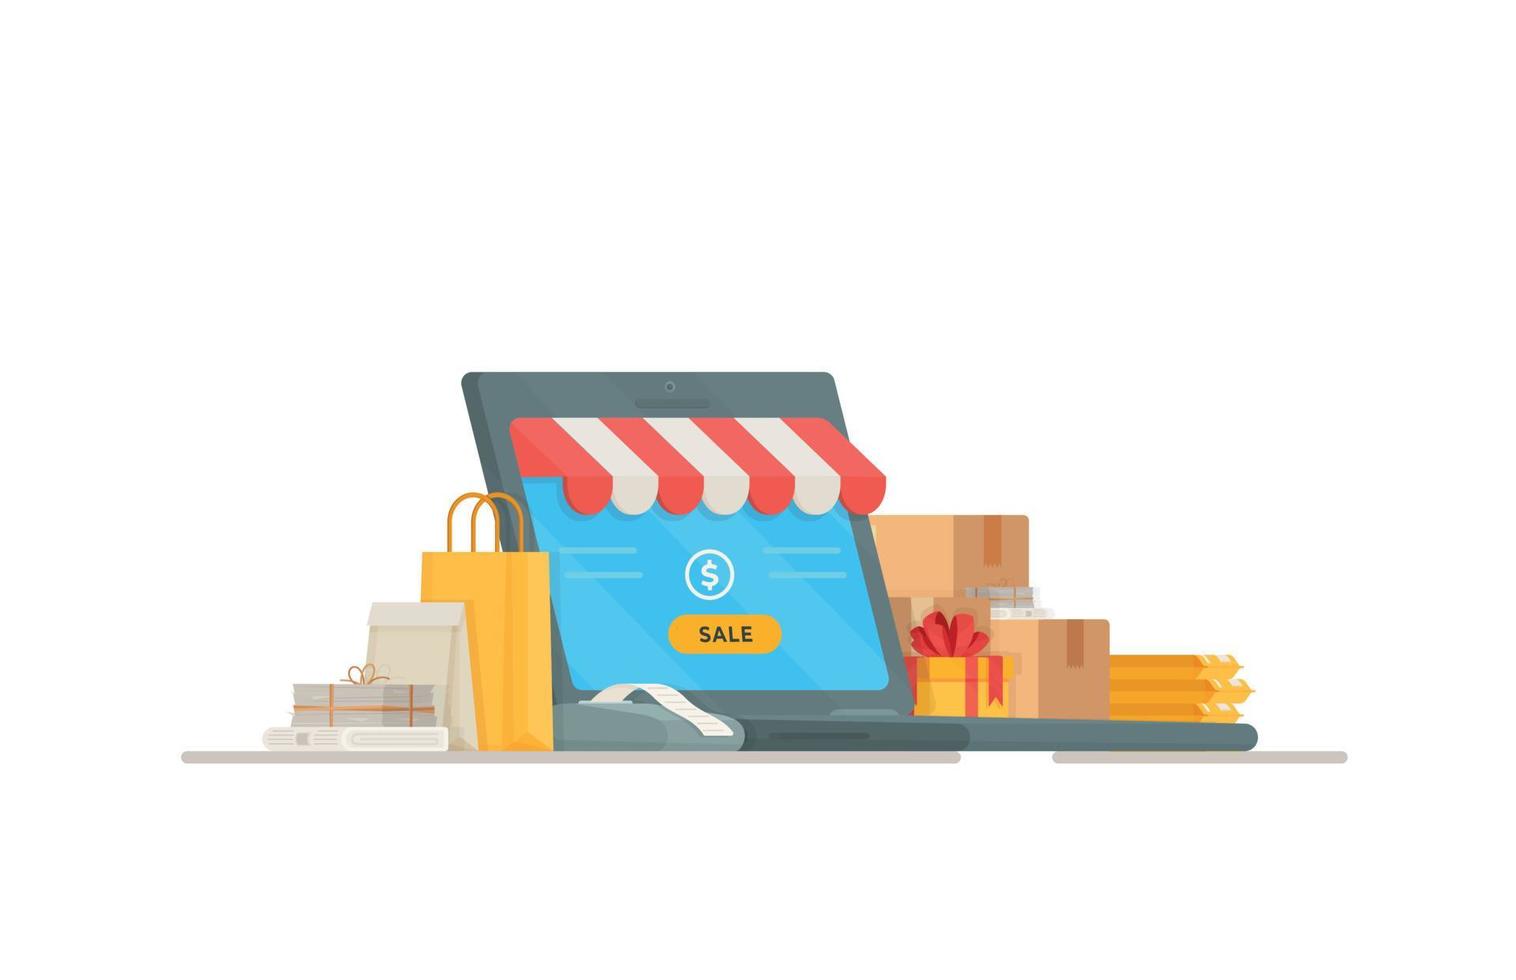 vektor illustration av kassaregistret. handla i en butik. shopping och betalning. onlineförsäljning i butikerna.